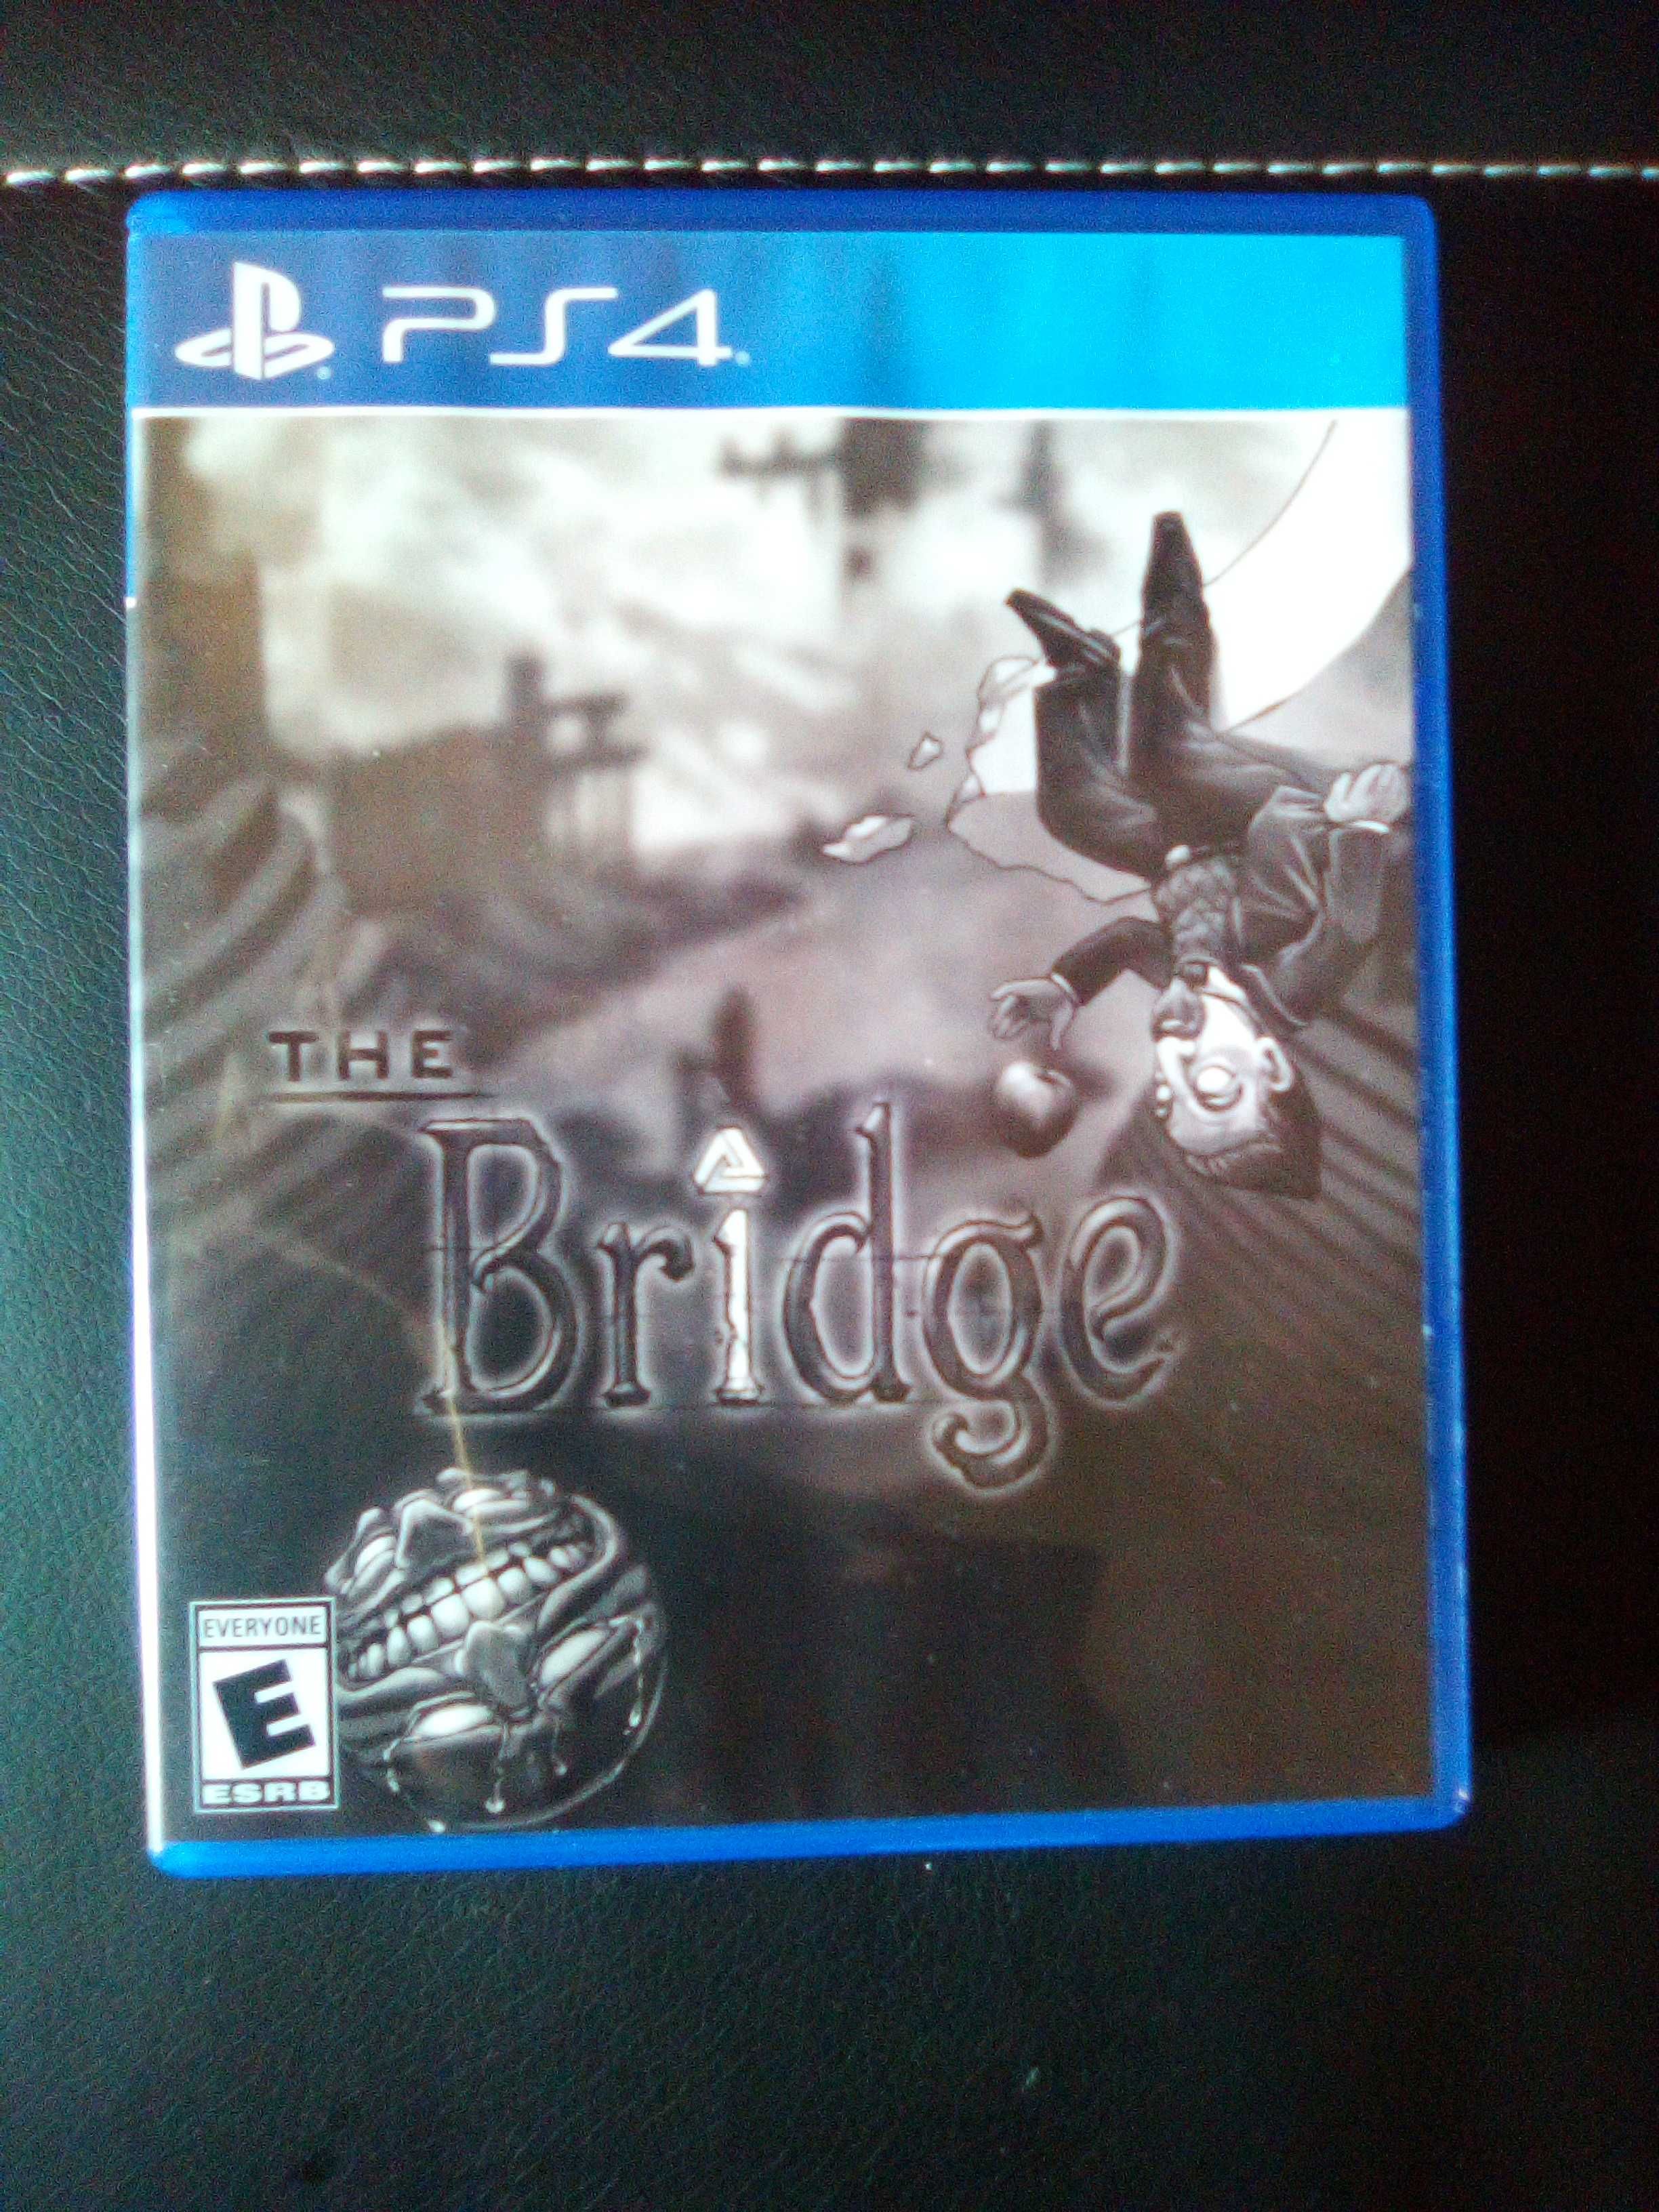 LER DESCRIÇÃO - The Bridge PS4 Playstation 4 Hard Copy Games